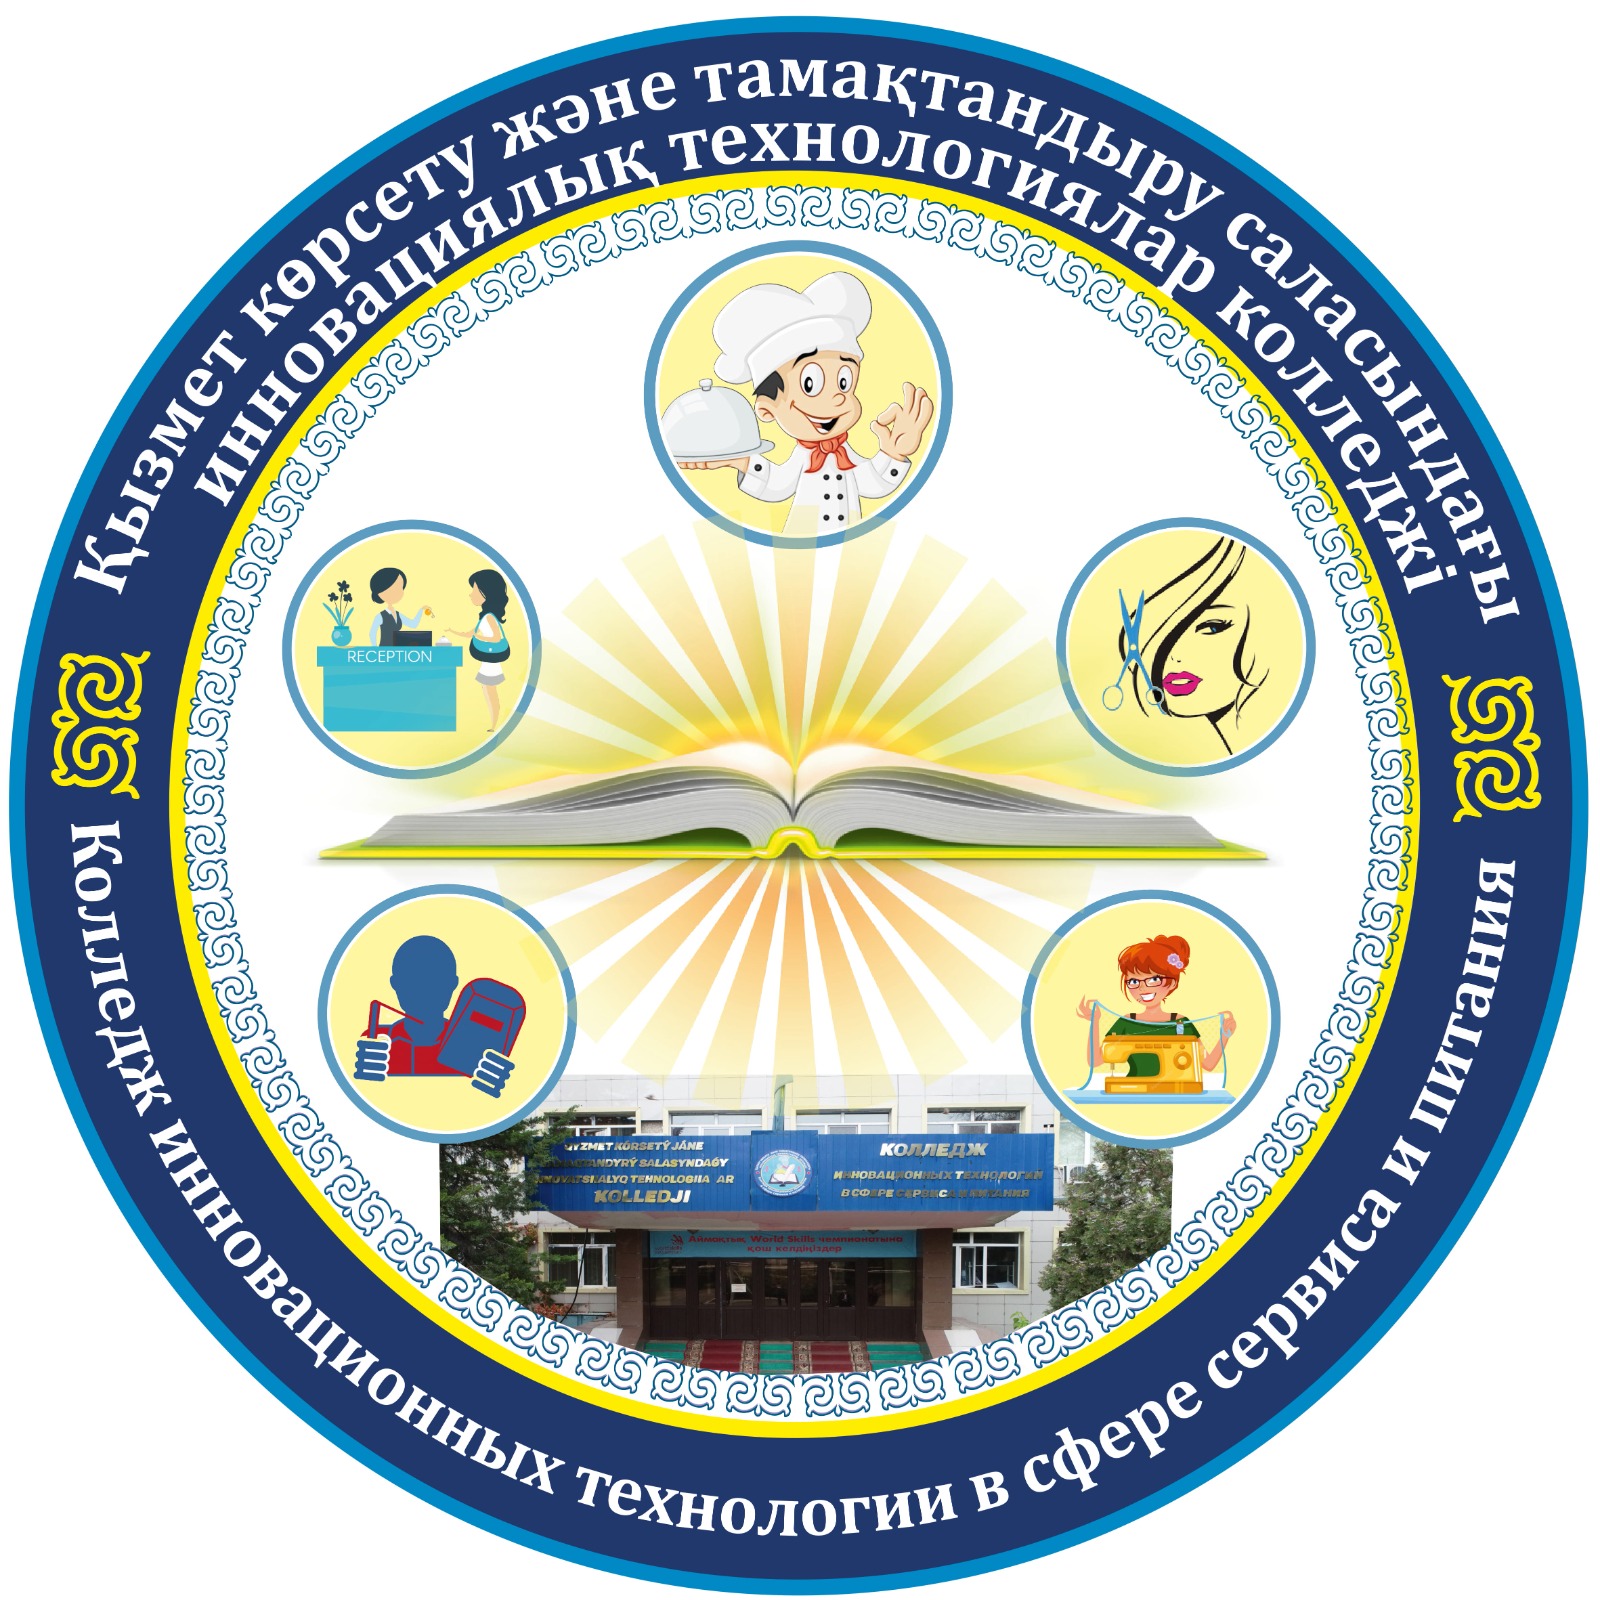 Алматинский областной колледж инновационных технологий в сфере сервиса и питания